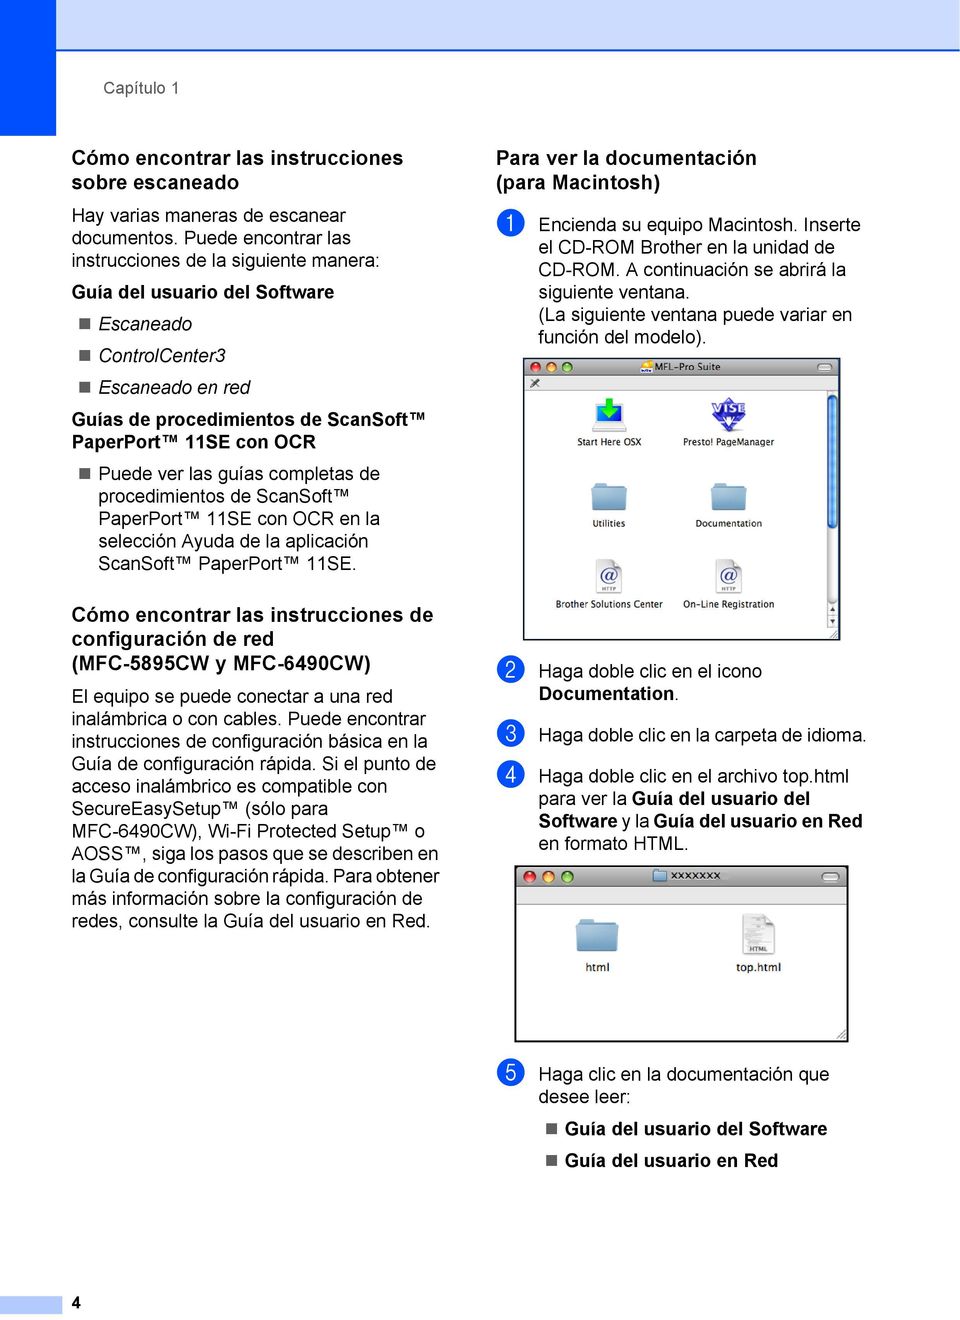 las guías completas de procedimientos de ScanSoft PaperPort 11SE con OCR en la selección Ayuda de la aplicación ScanSoft PaperPort 11SE.